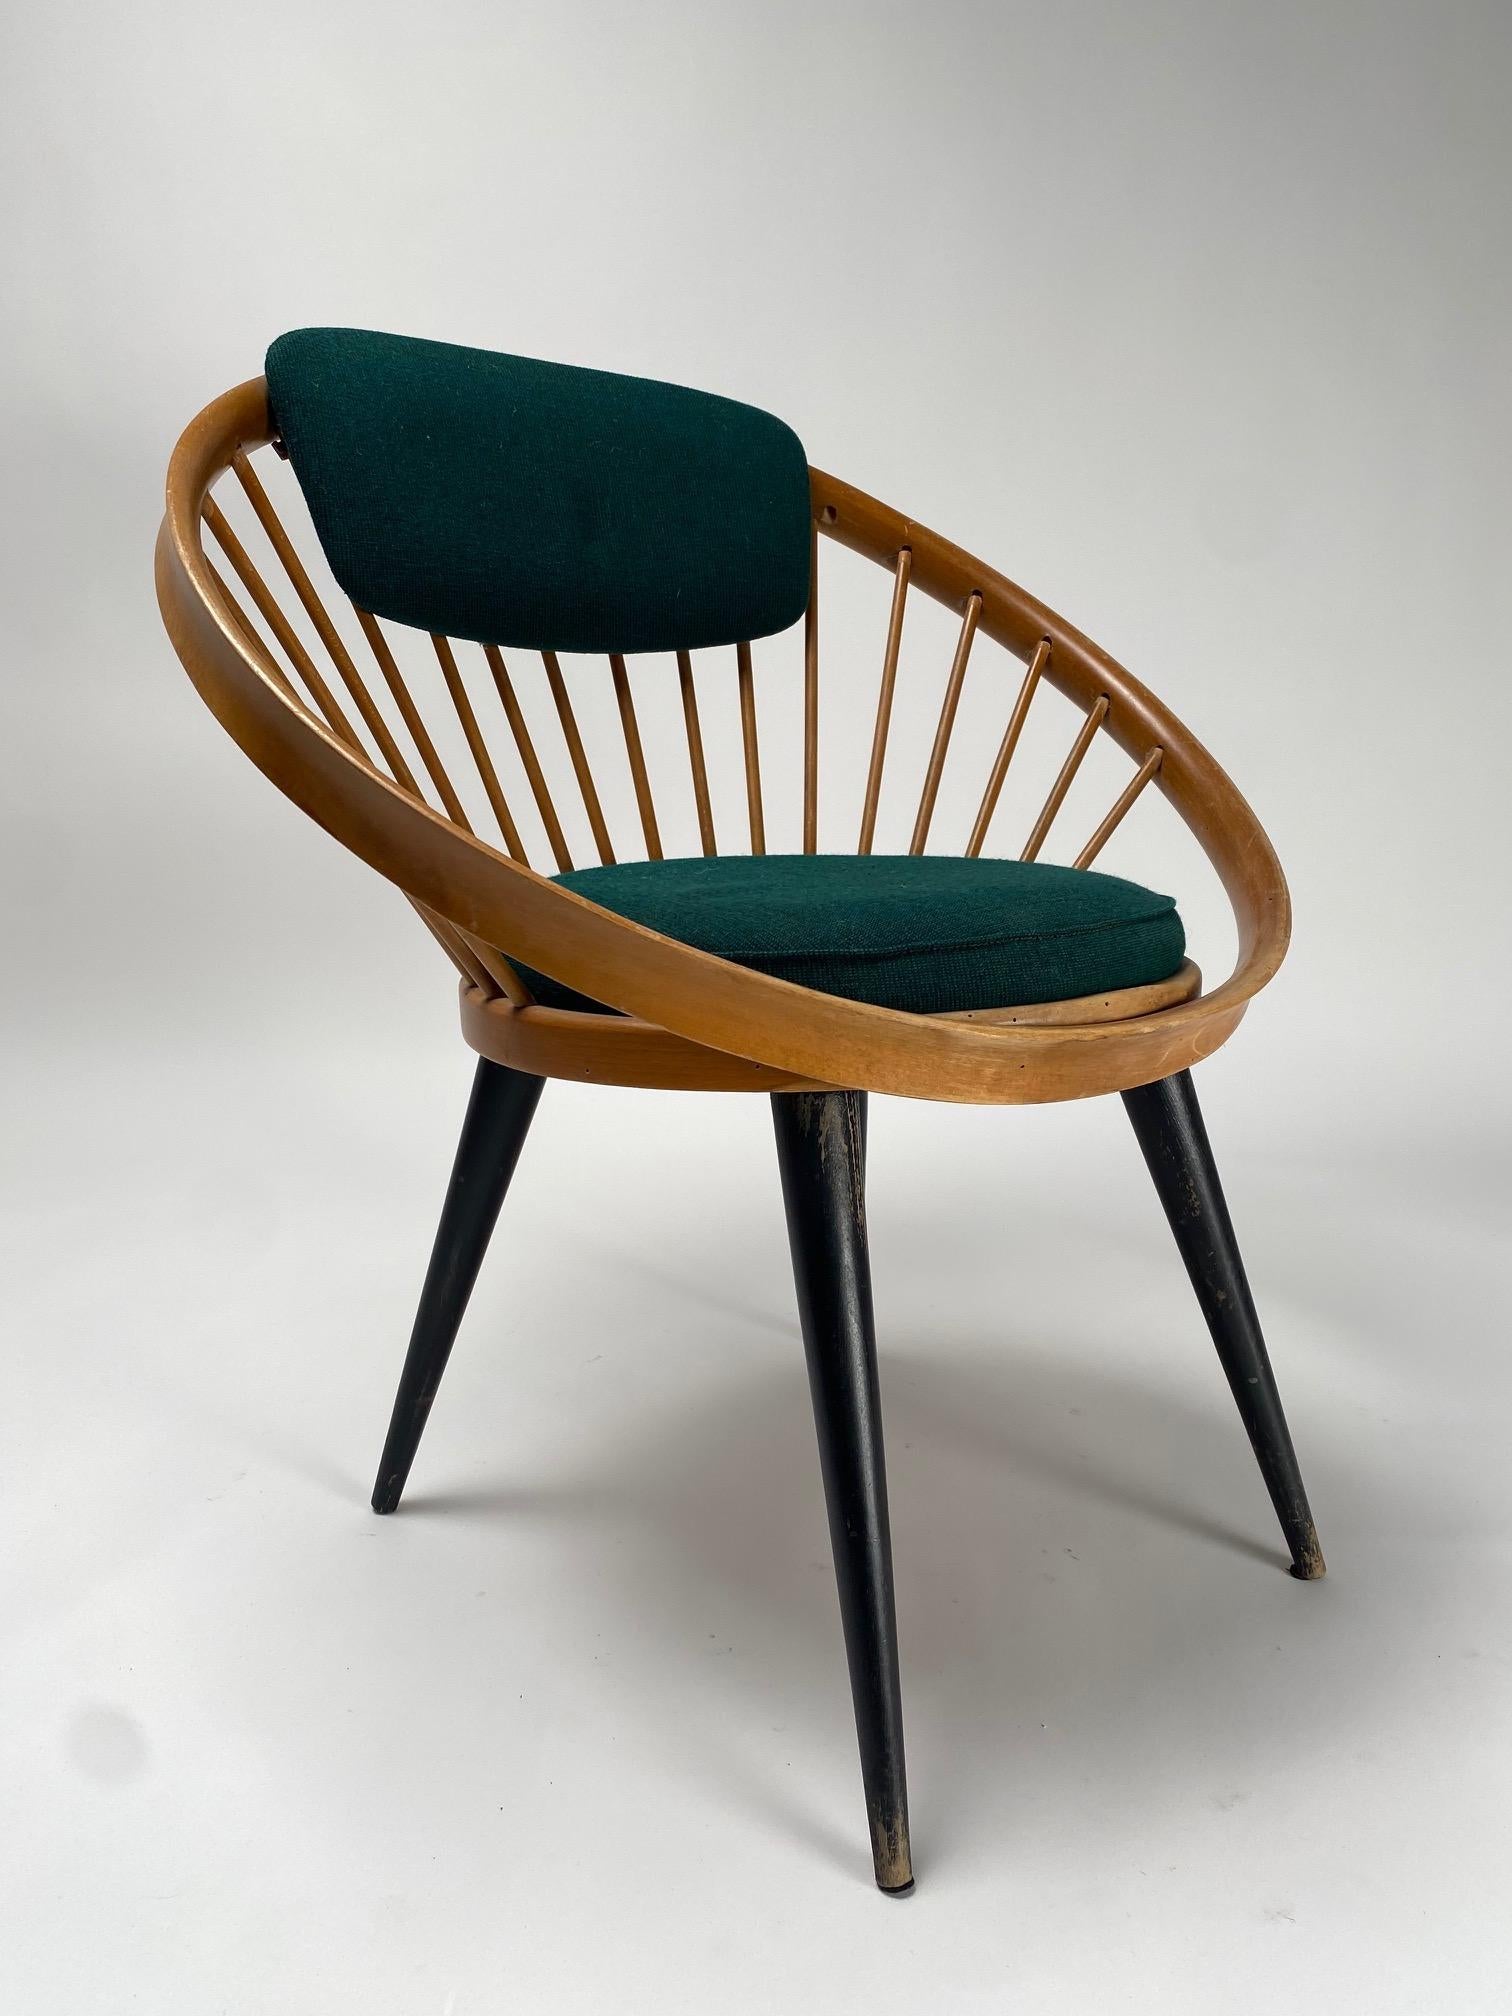 Er ist einer der ikonischsten und repräsentativsten Stühle des schwedischen Designs, entworfen von Yngve Ekström und hergestellt in den 1960er Jahren für Swedese, Schweden.

  Zusammen mit Kollegen wie Aalto, Mathsson, Jacobsen und Kjaerholm war